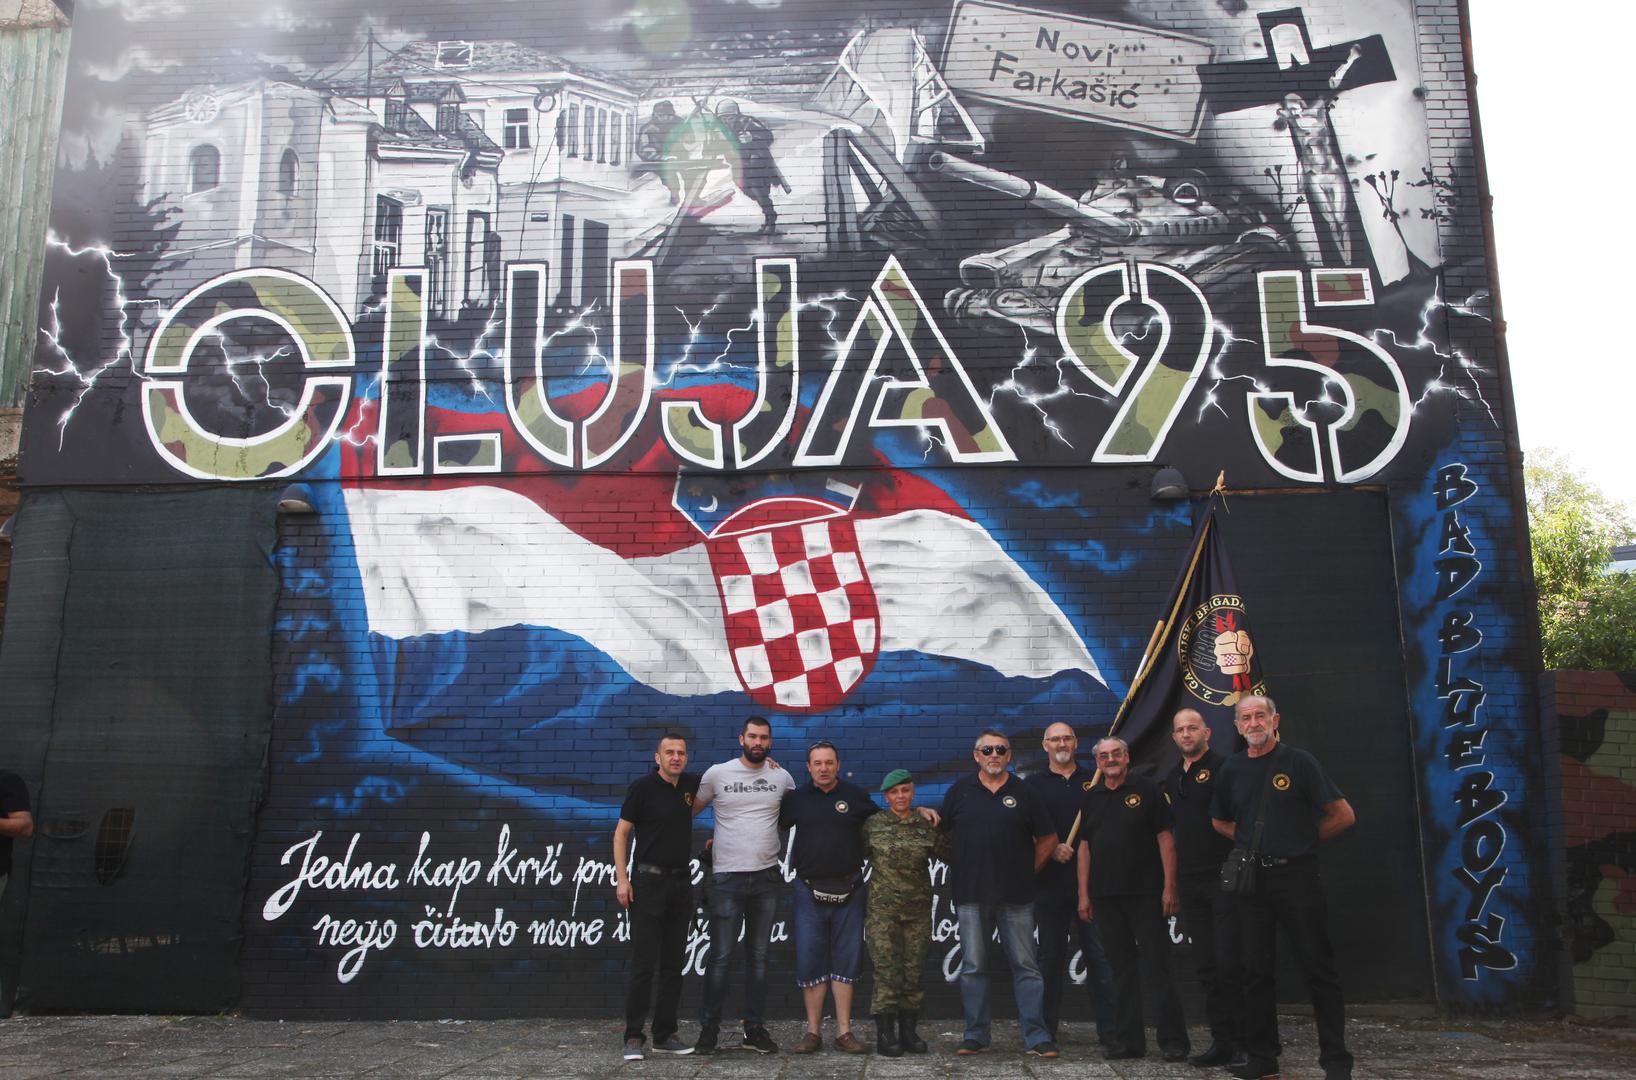 Taj dan su obilježili i Bad Blue Boysi velikim muralom u Petrinji